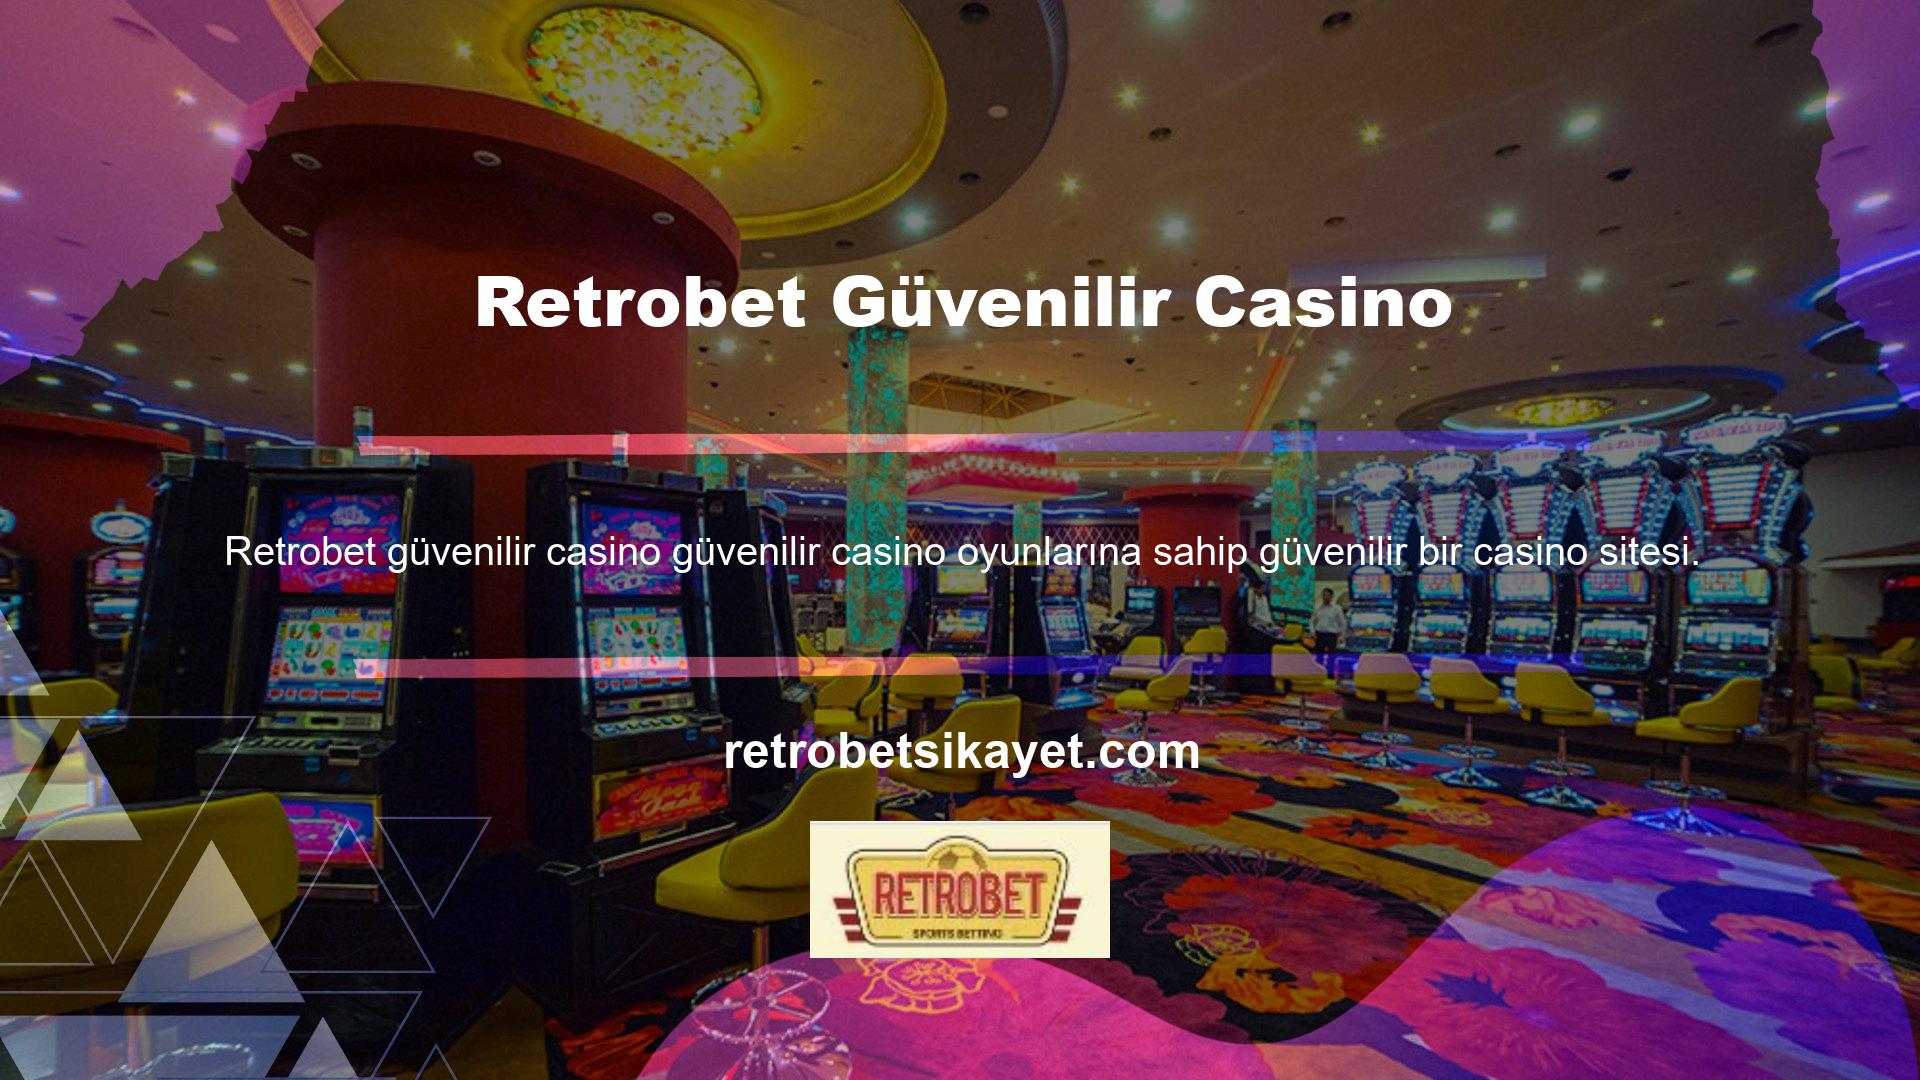 Saygın casino siteleri lisanslı sitelerdir ancak inşaat izni almadan casino oyunları oynarlar